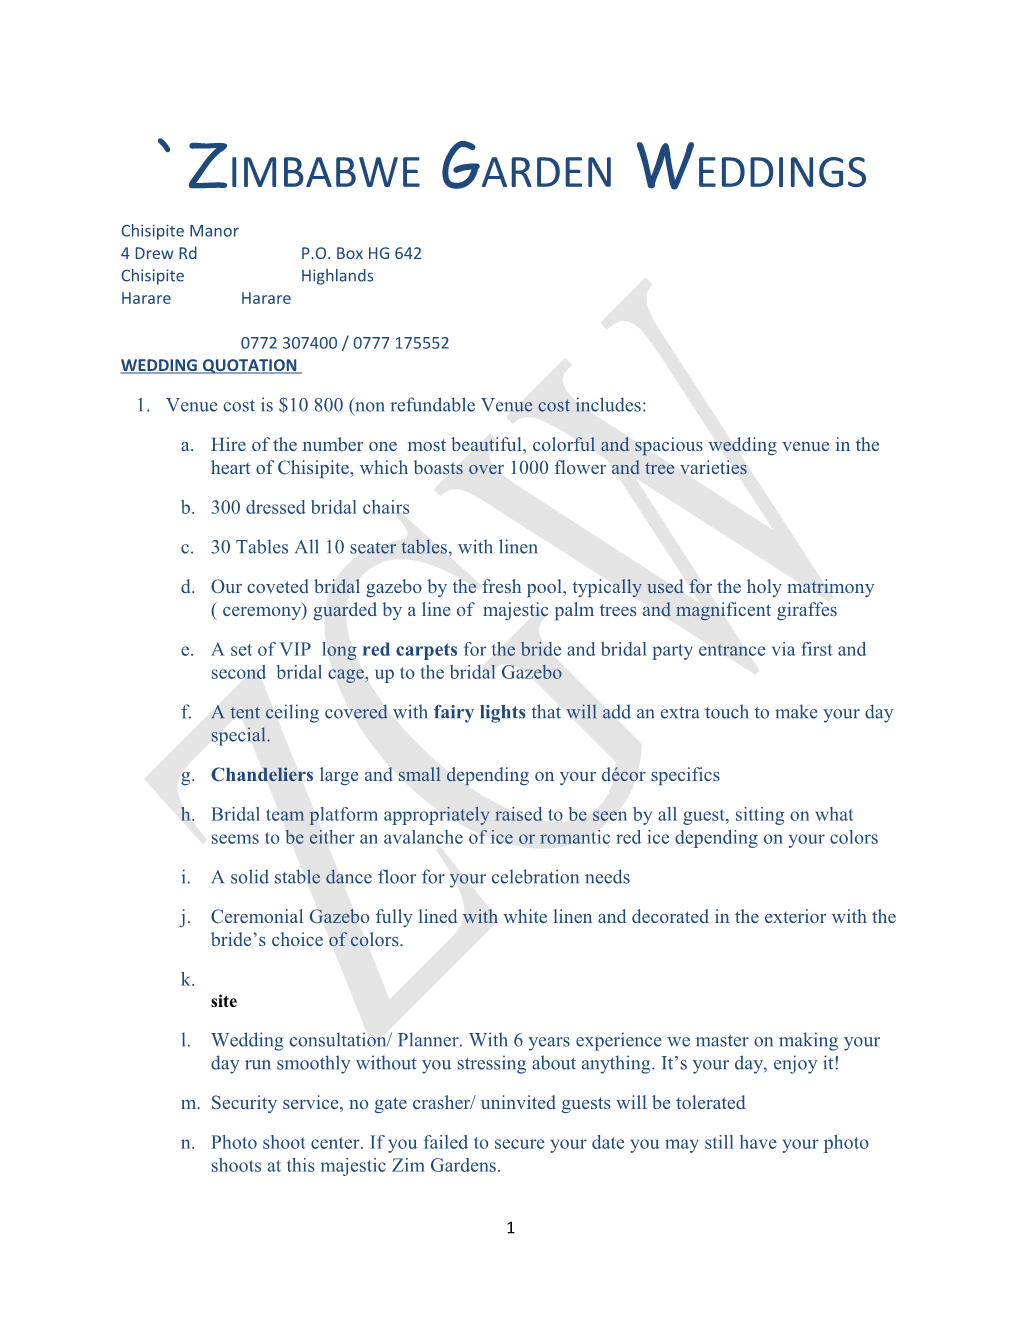 Zimbabwe Garden Weddings